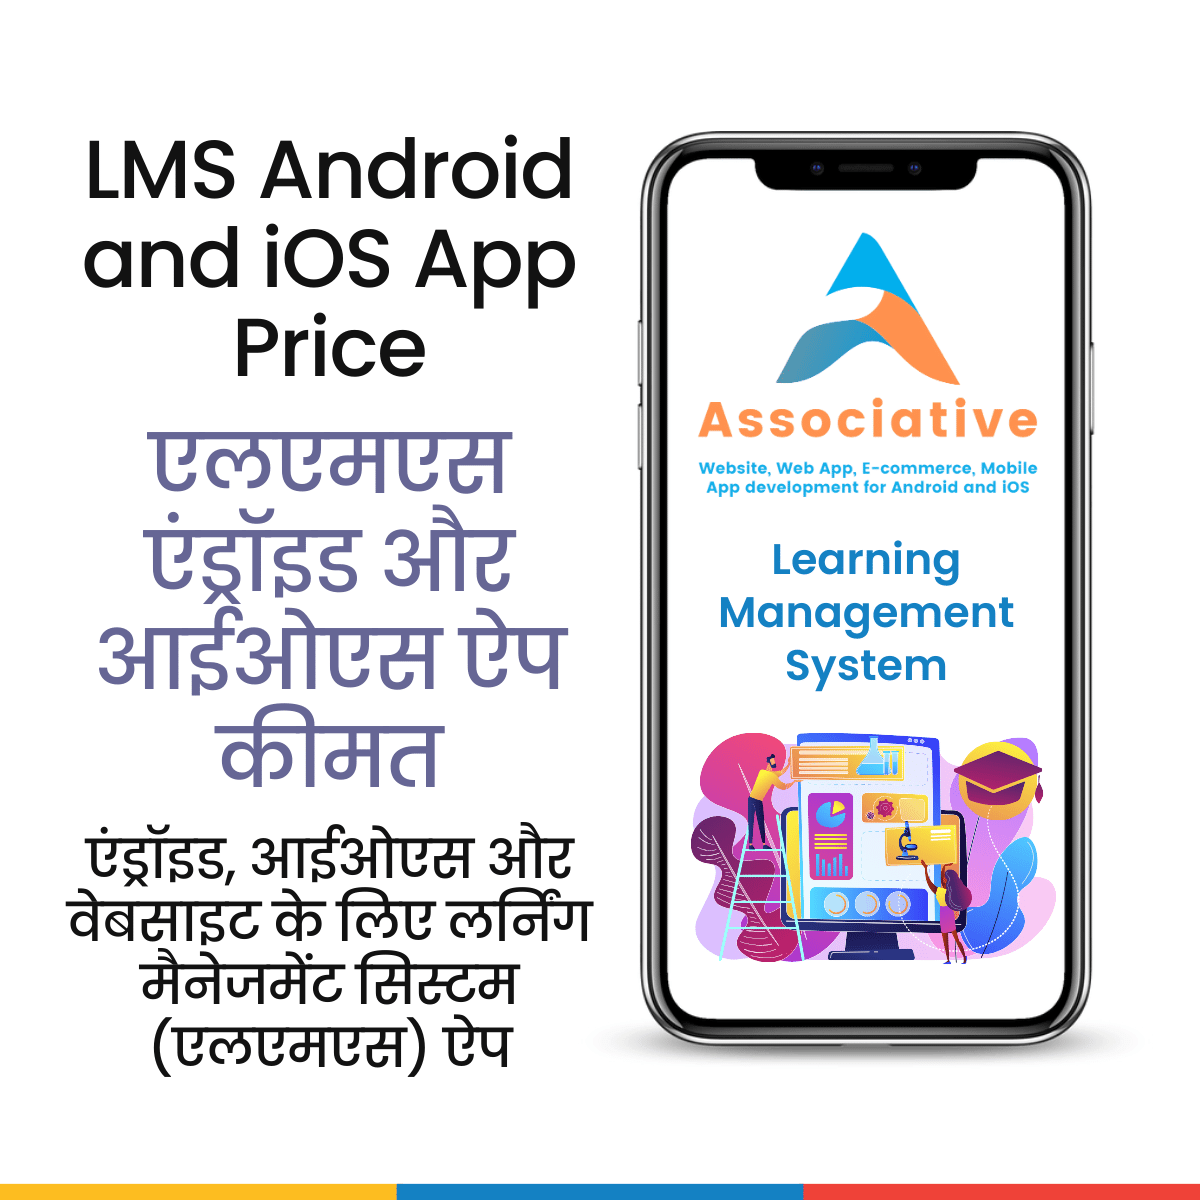 LMS Android and iOS App Price

एलएमएस एंड्रॉइड और आईओएस ऐप कीमत